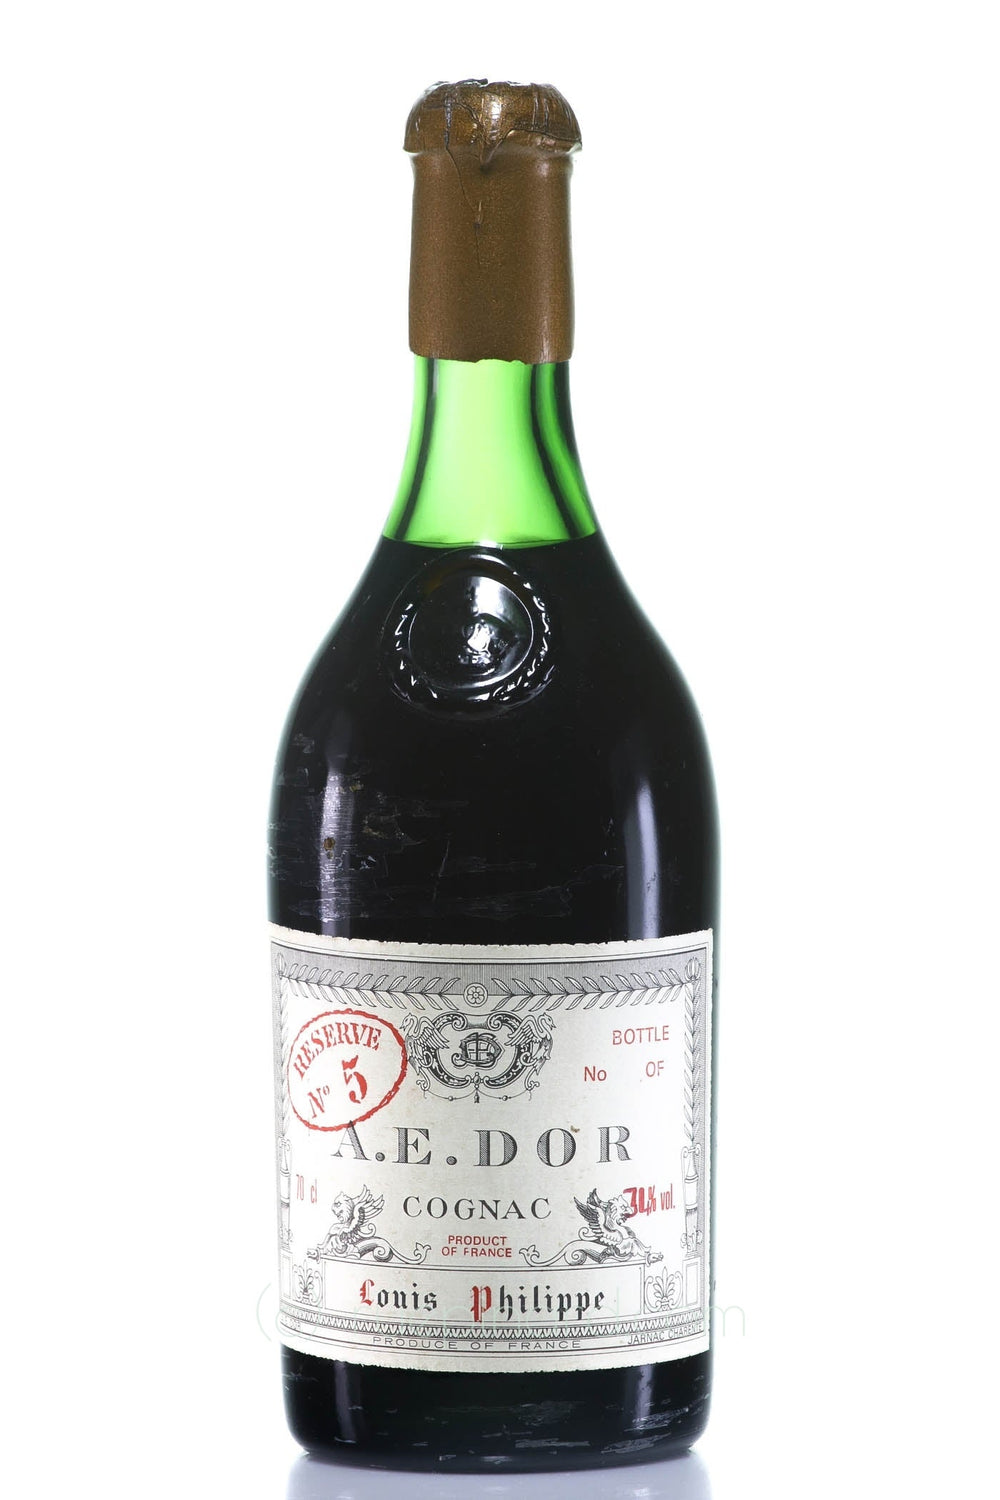 A.E. Dor 1975 Vieille Reserve No. 5 Cognac (Grande Champagne) - Rue Pinard